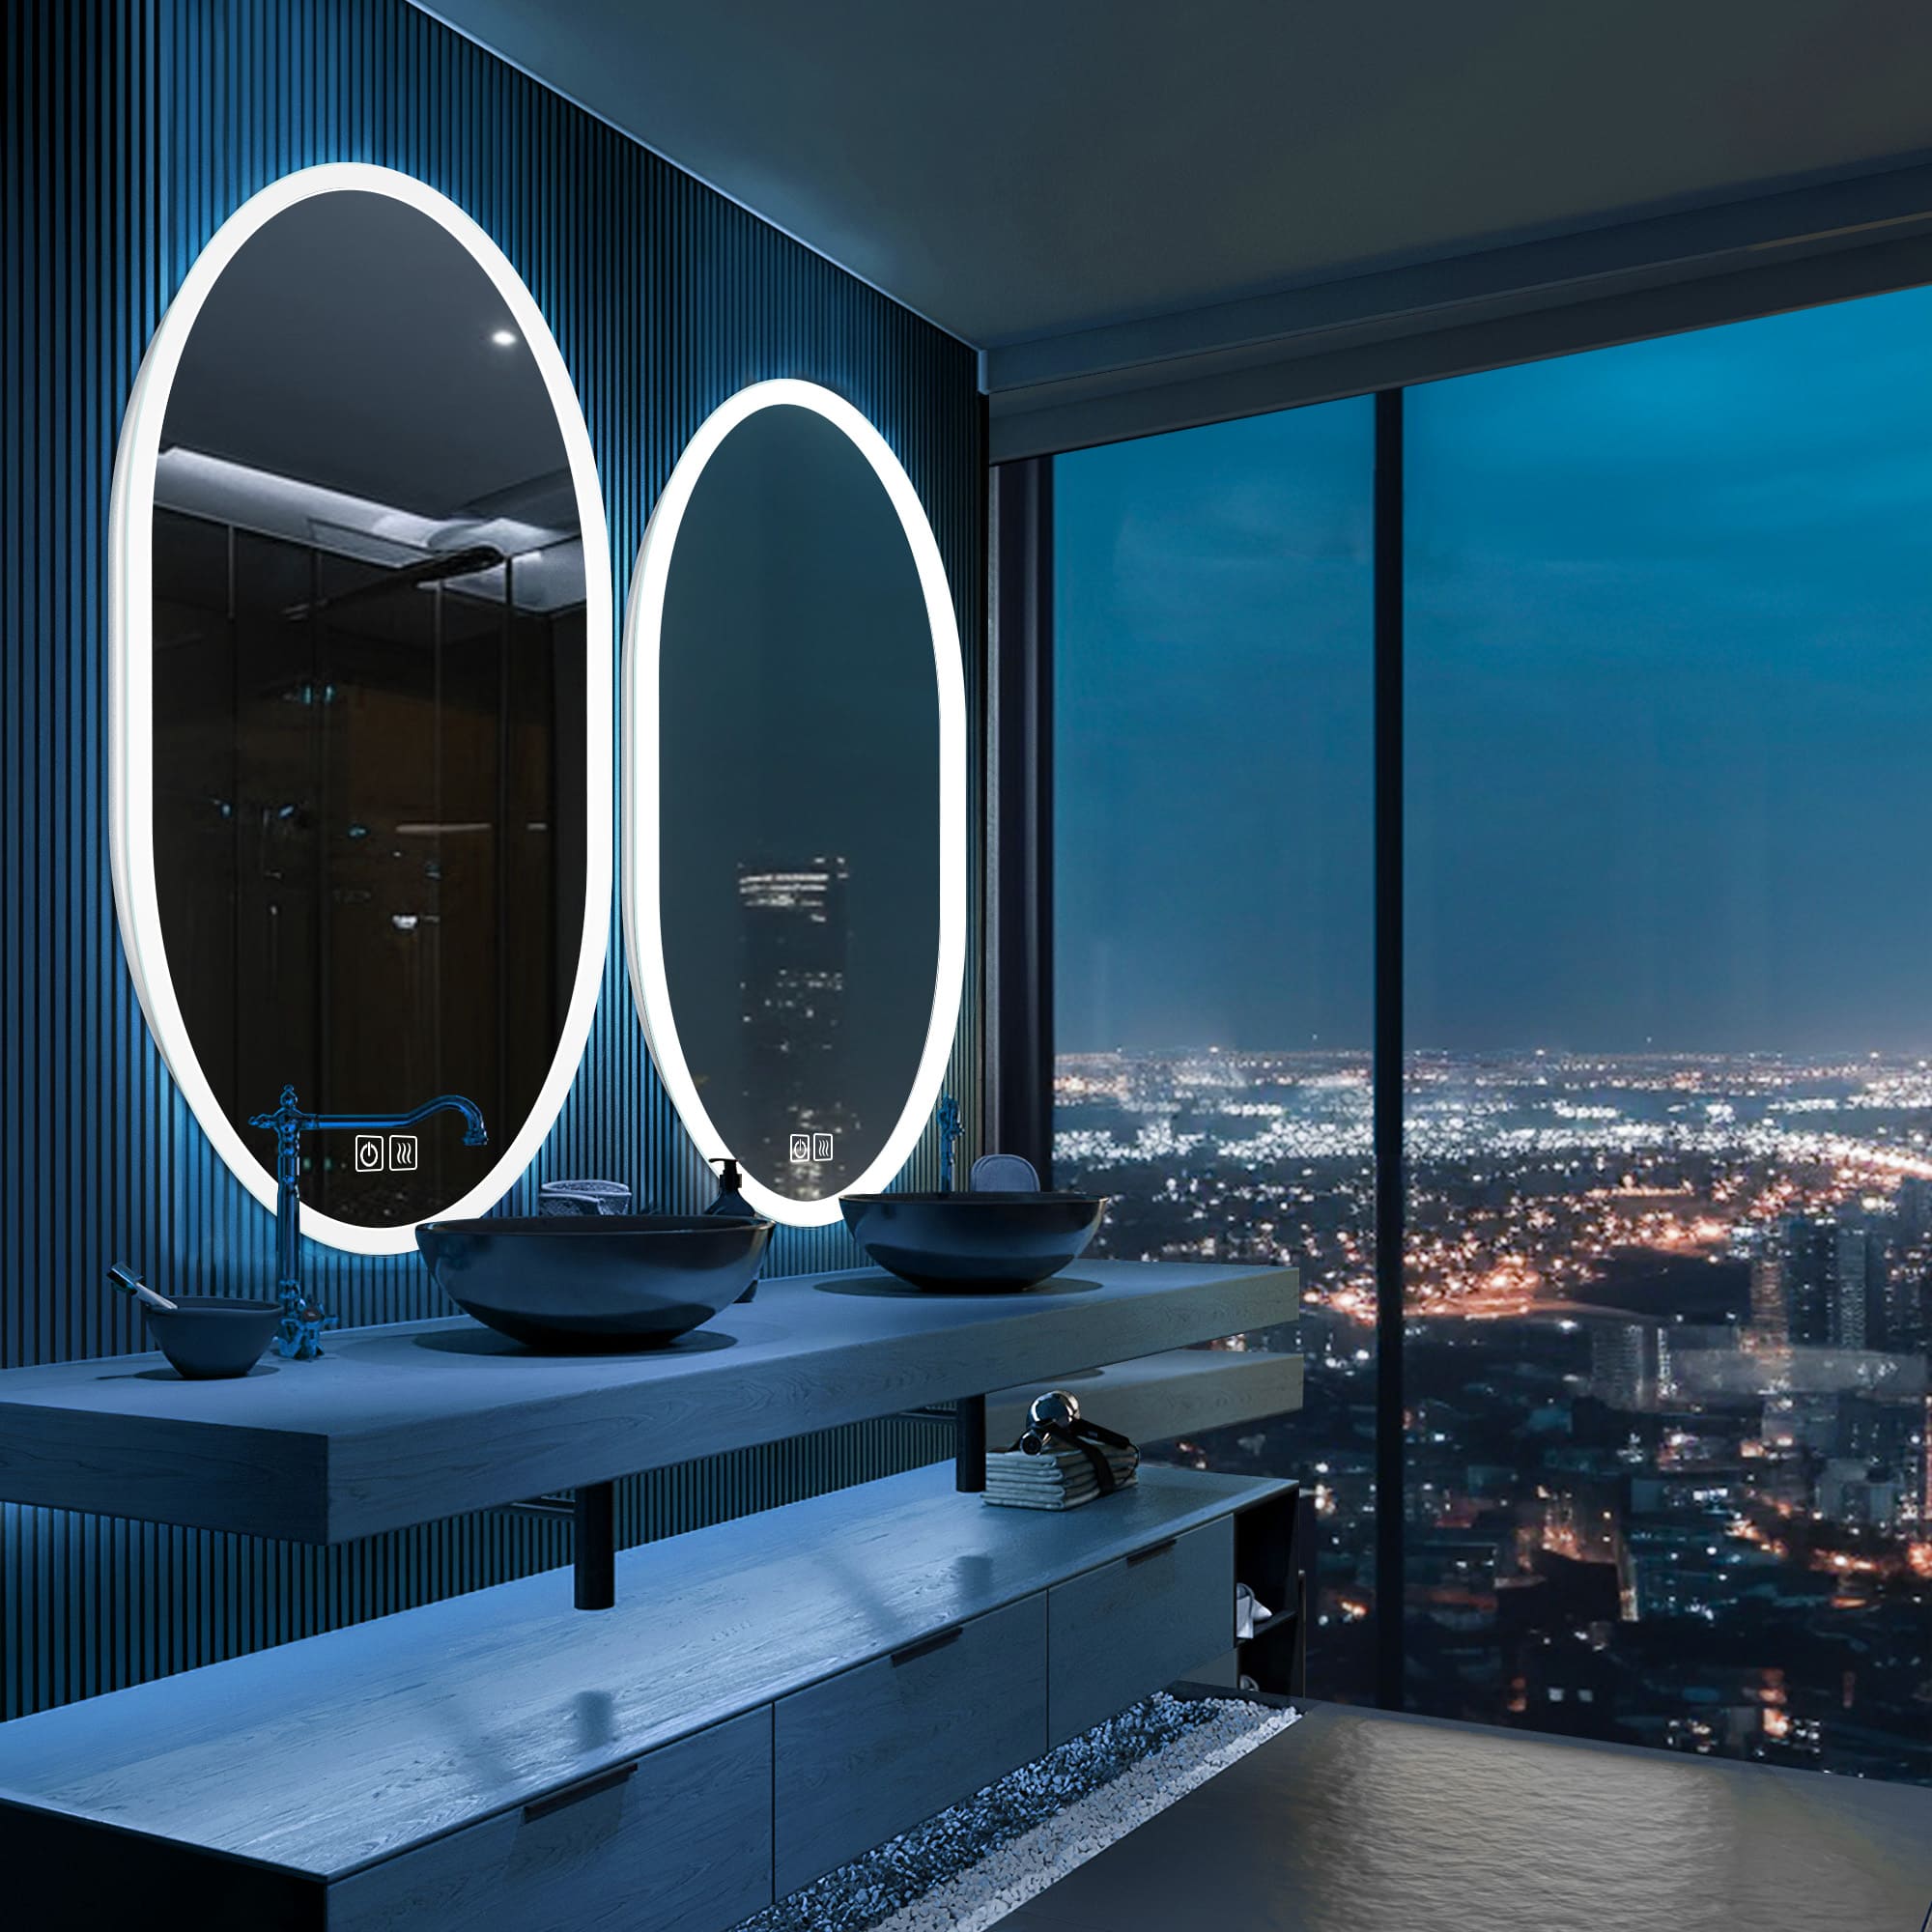 Haumea LED Mirror for bathroom